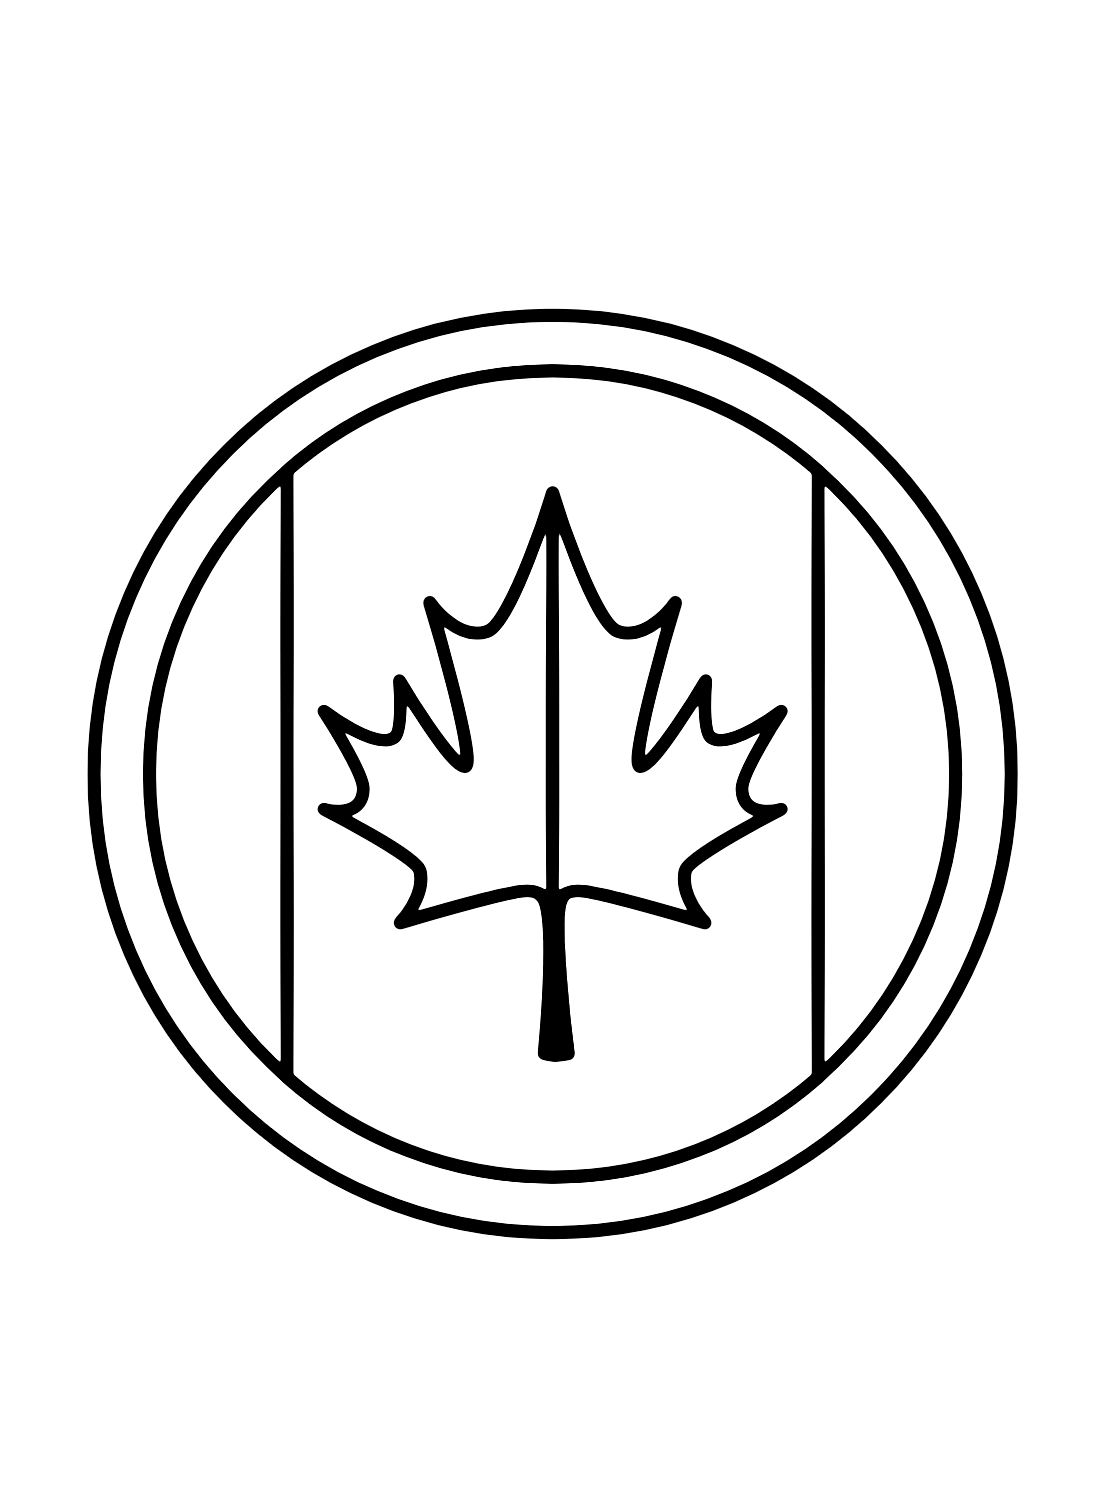 Hoja de arce canadiense de Canadá